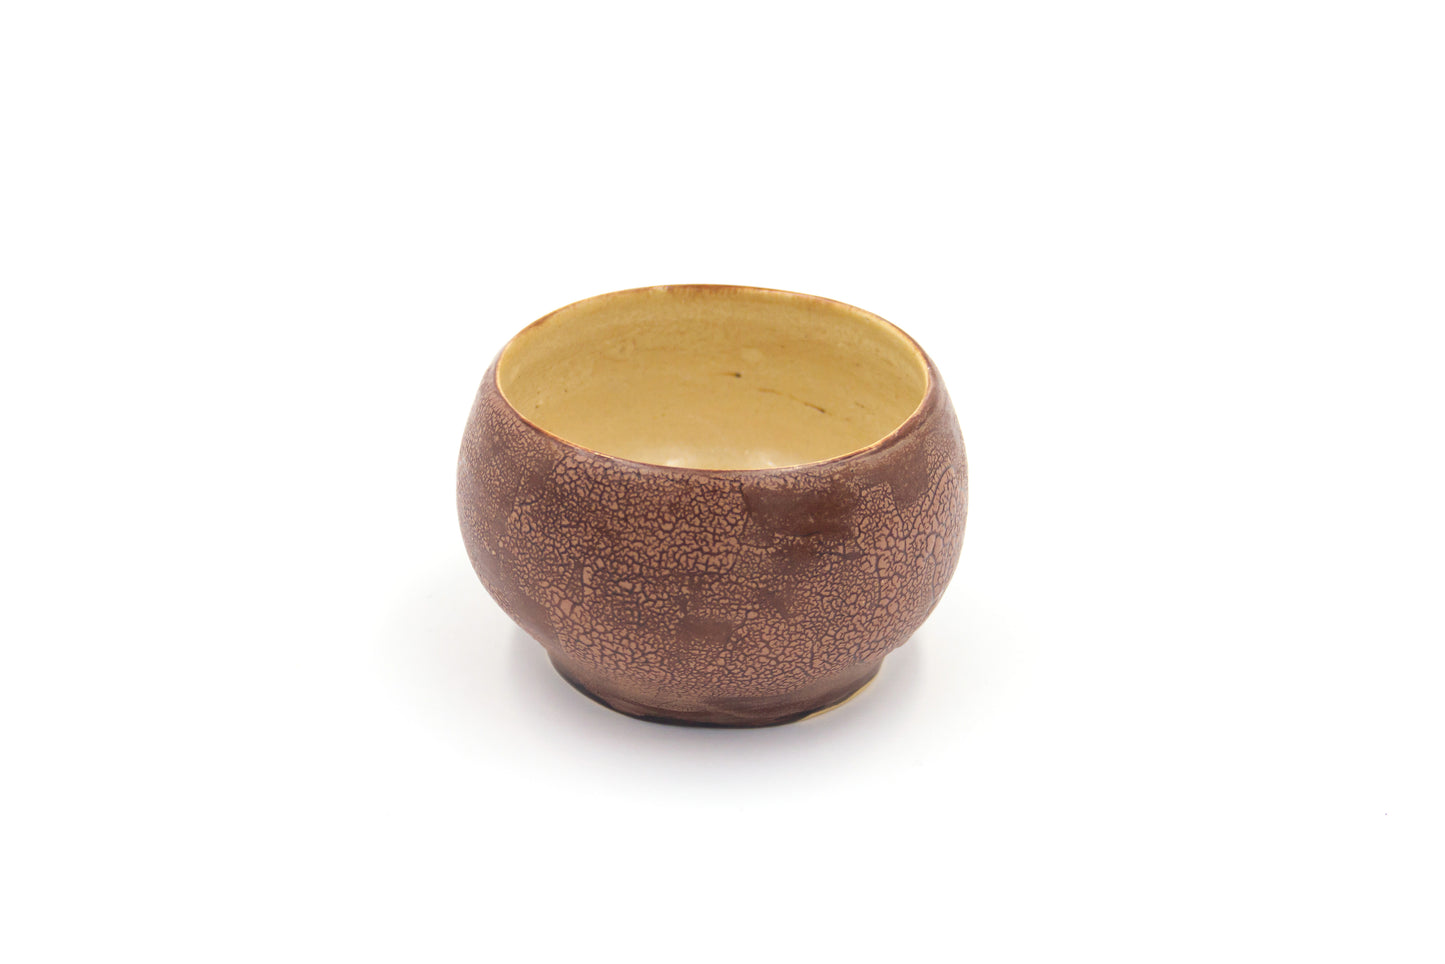 Miseczka ceramiczna w kolorze beżowo-brązowym